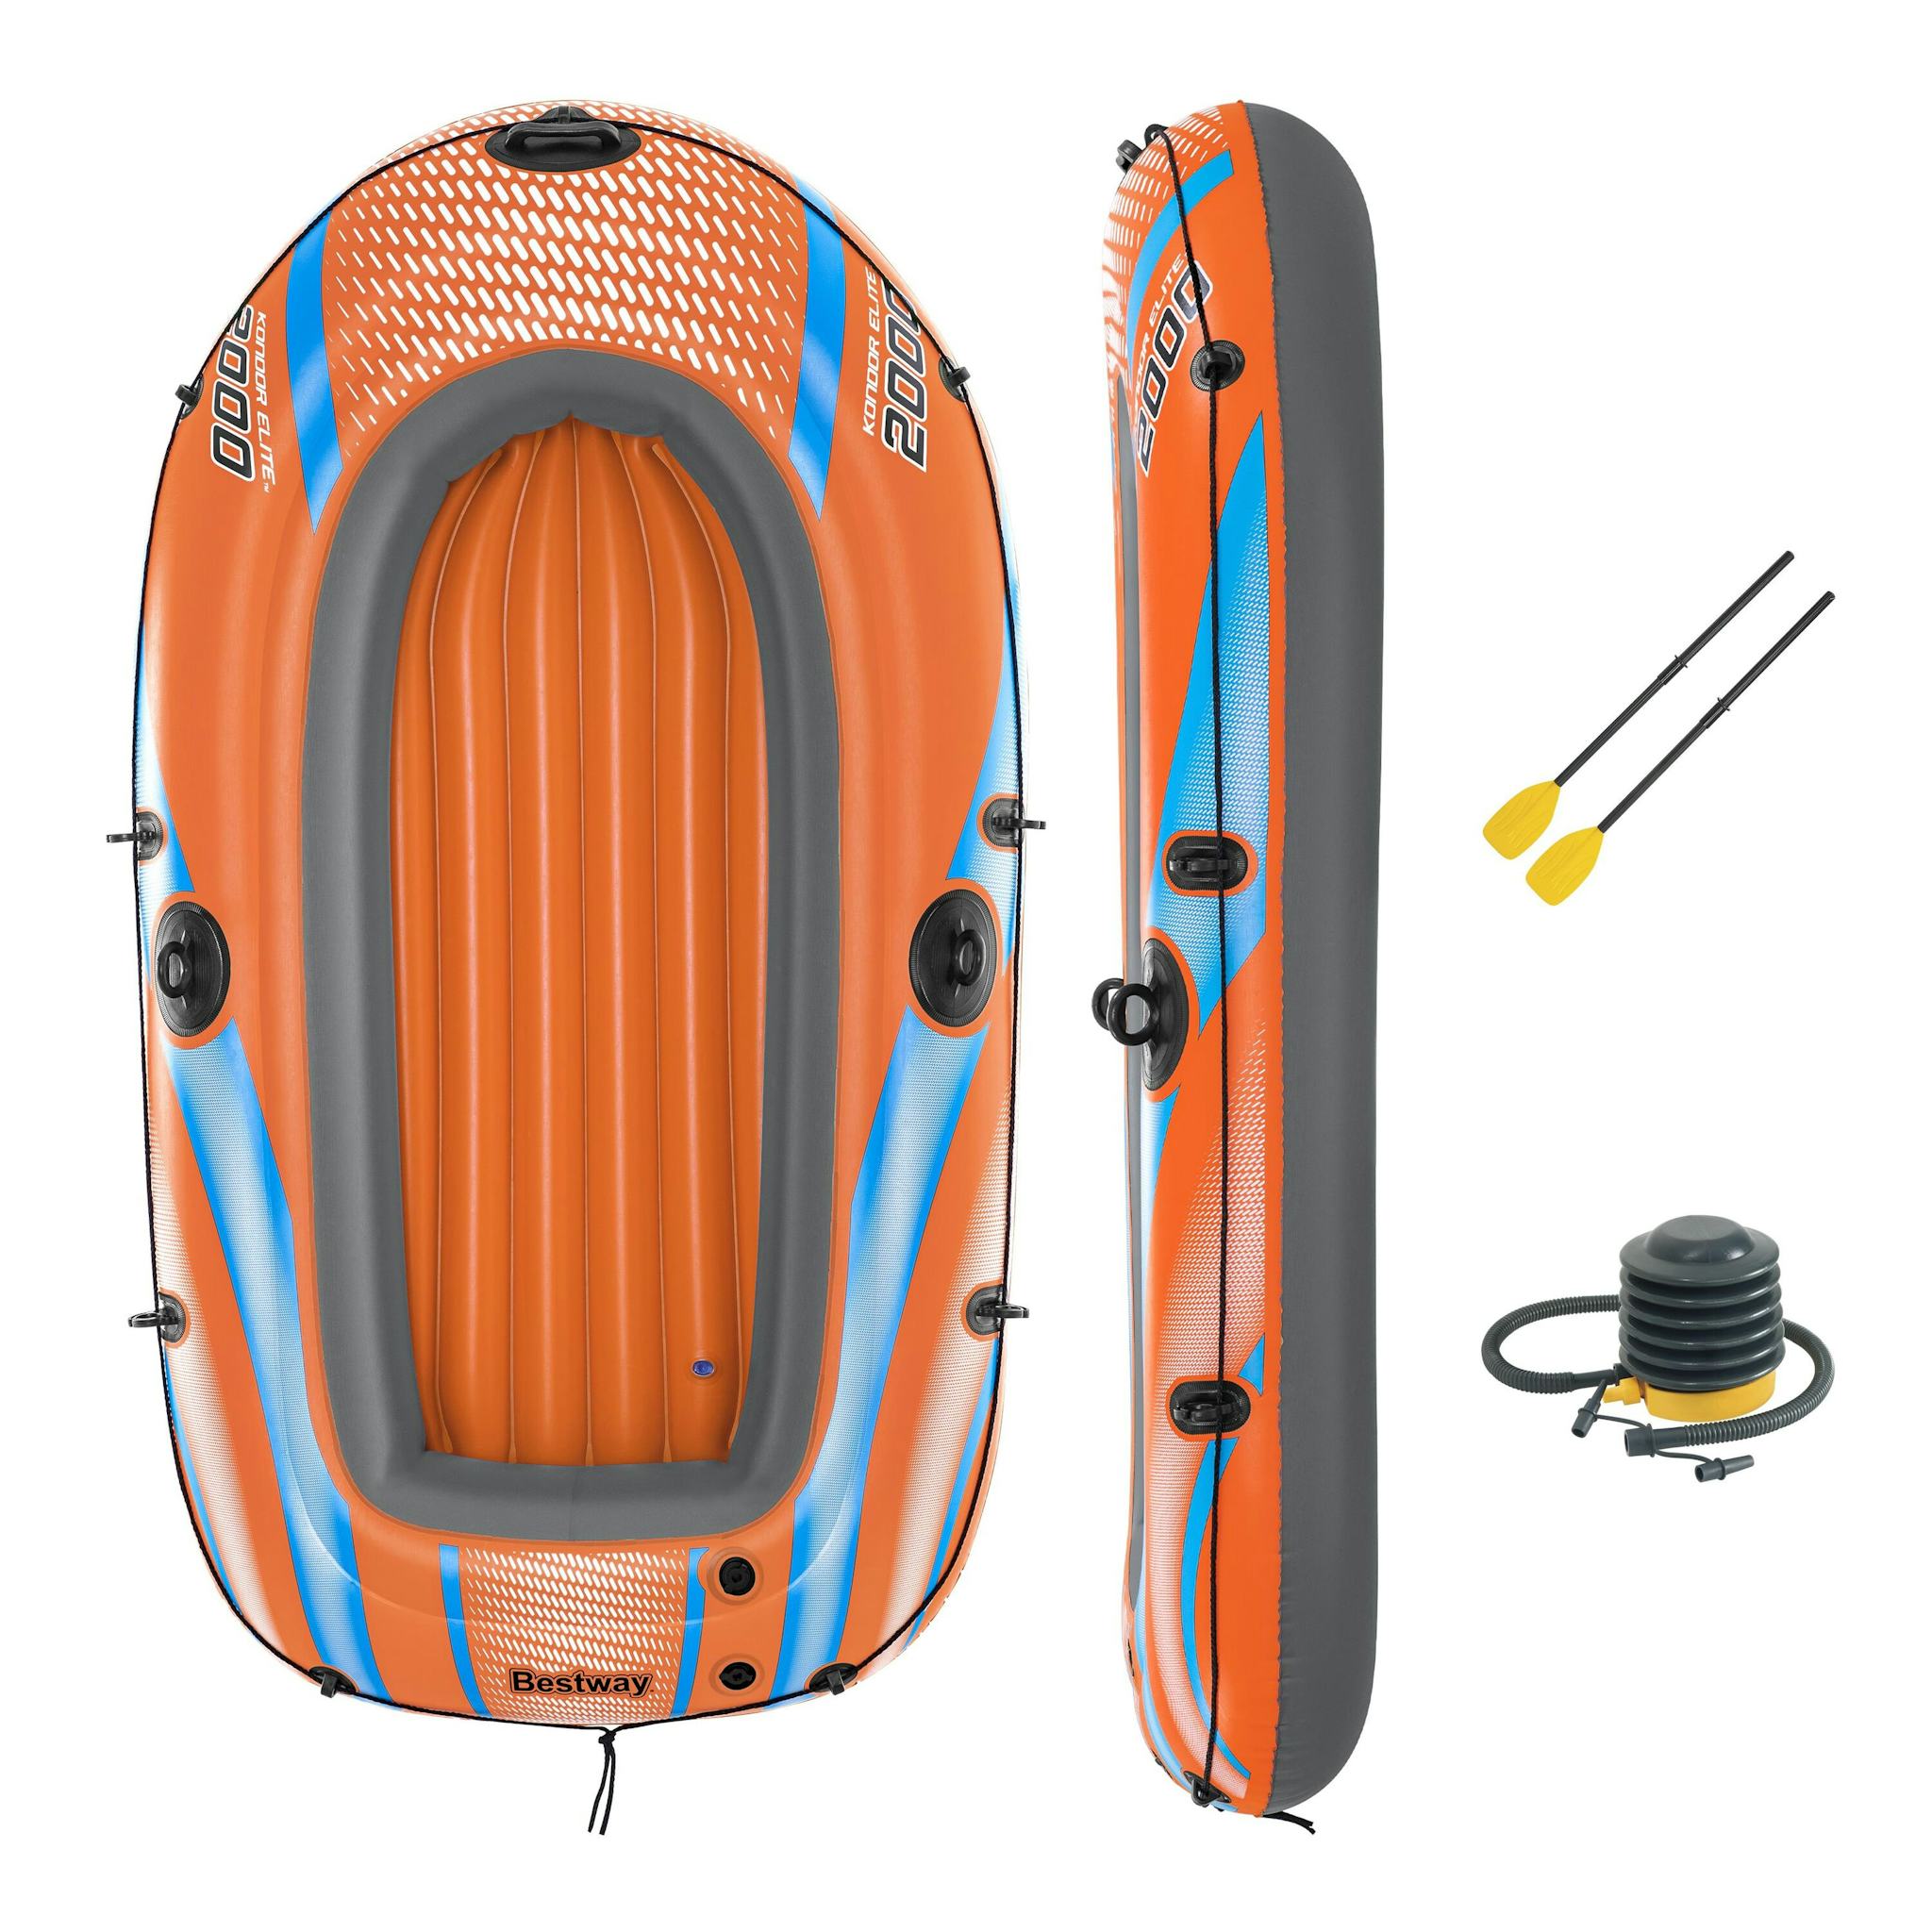 Sports d'eau Bateau gonflable Kondor Elite™ 2000 raft set, 196 x 106 cm, 1 adulte+1enfant, 120kg max, pompe à pied et 2 pagaies Bestway 2